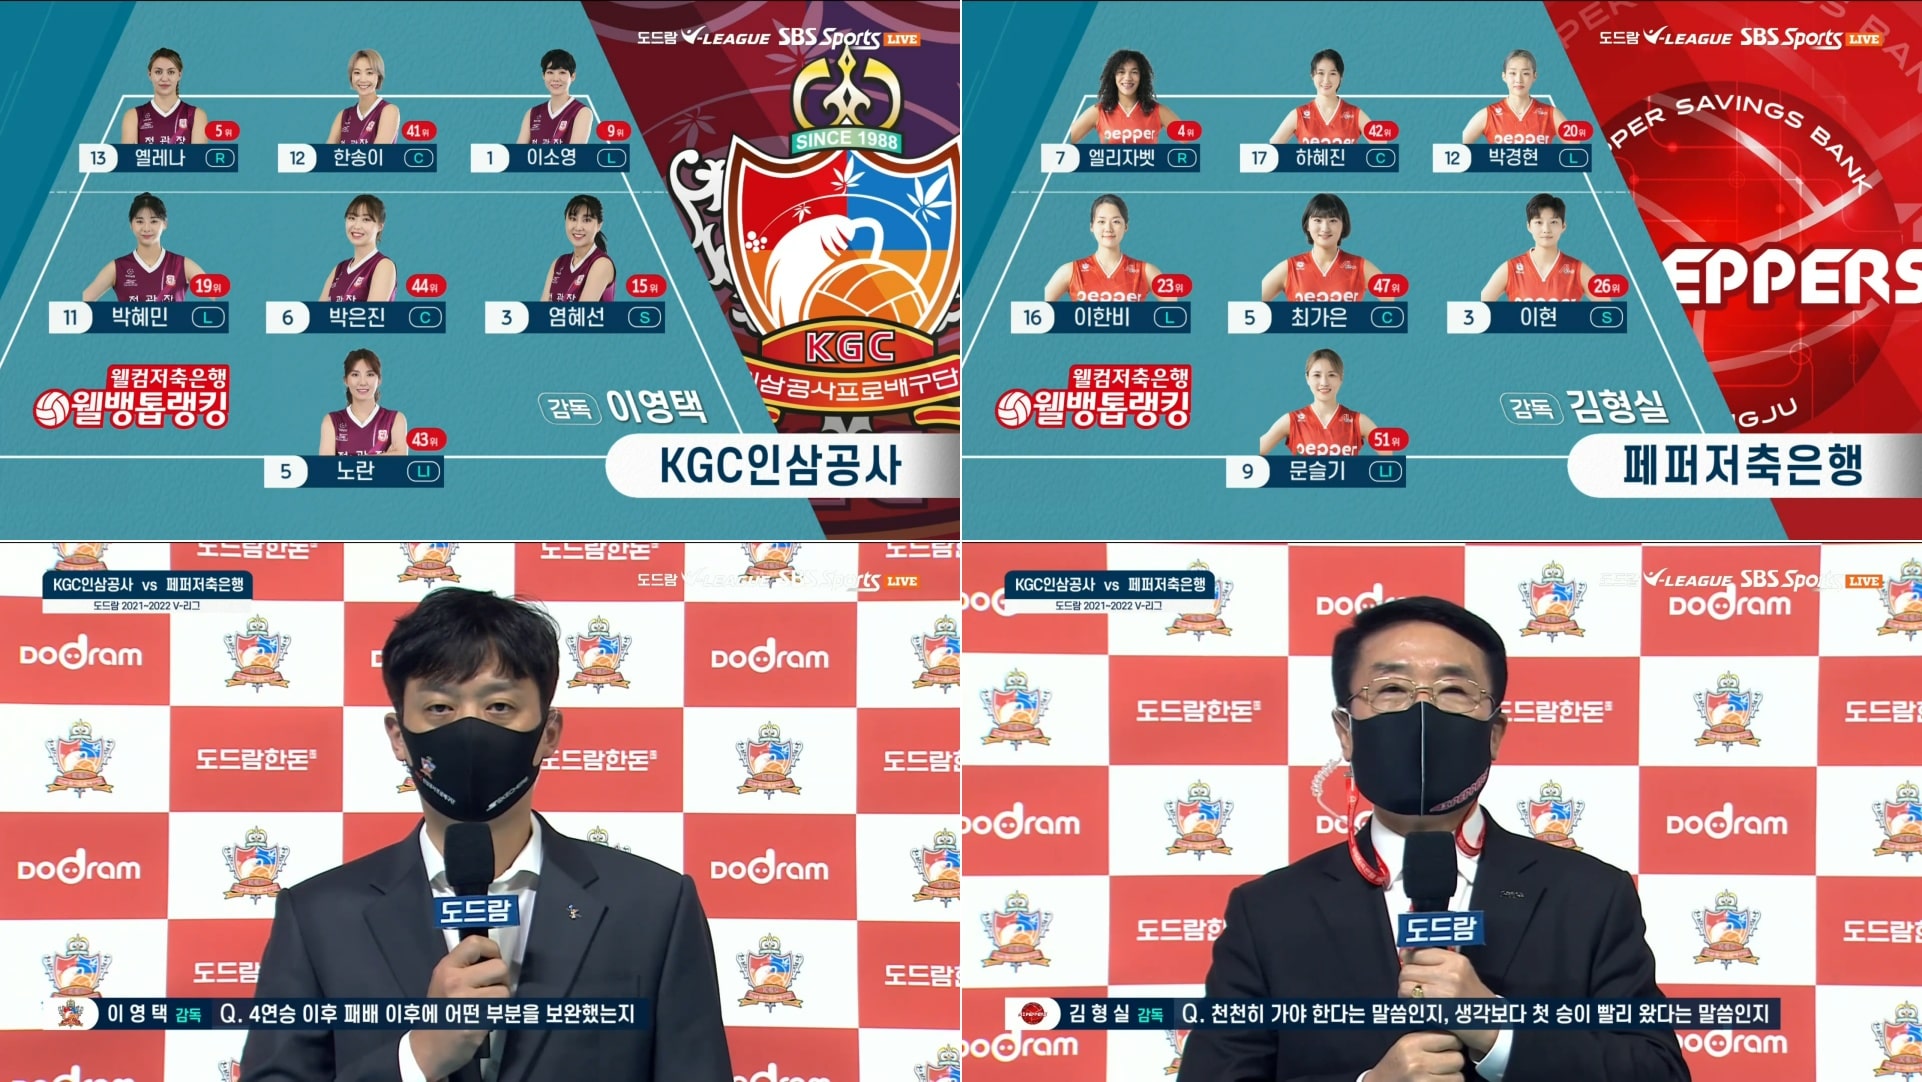 KGC인삼공사 : 페퍼저축은행 2라운드 선발 주요 라인업 및 사전 인터뷰 장면을 모았습니다. (출처 : SBS 스포츠)